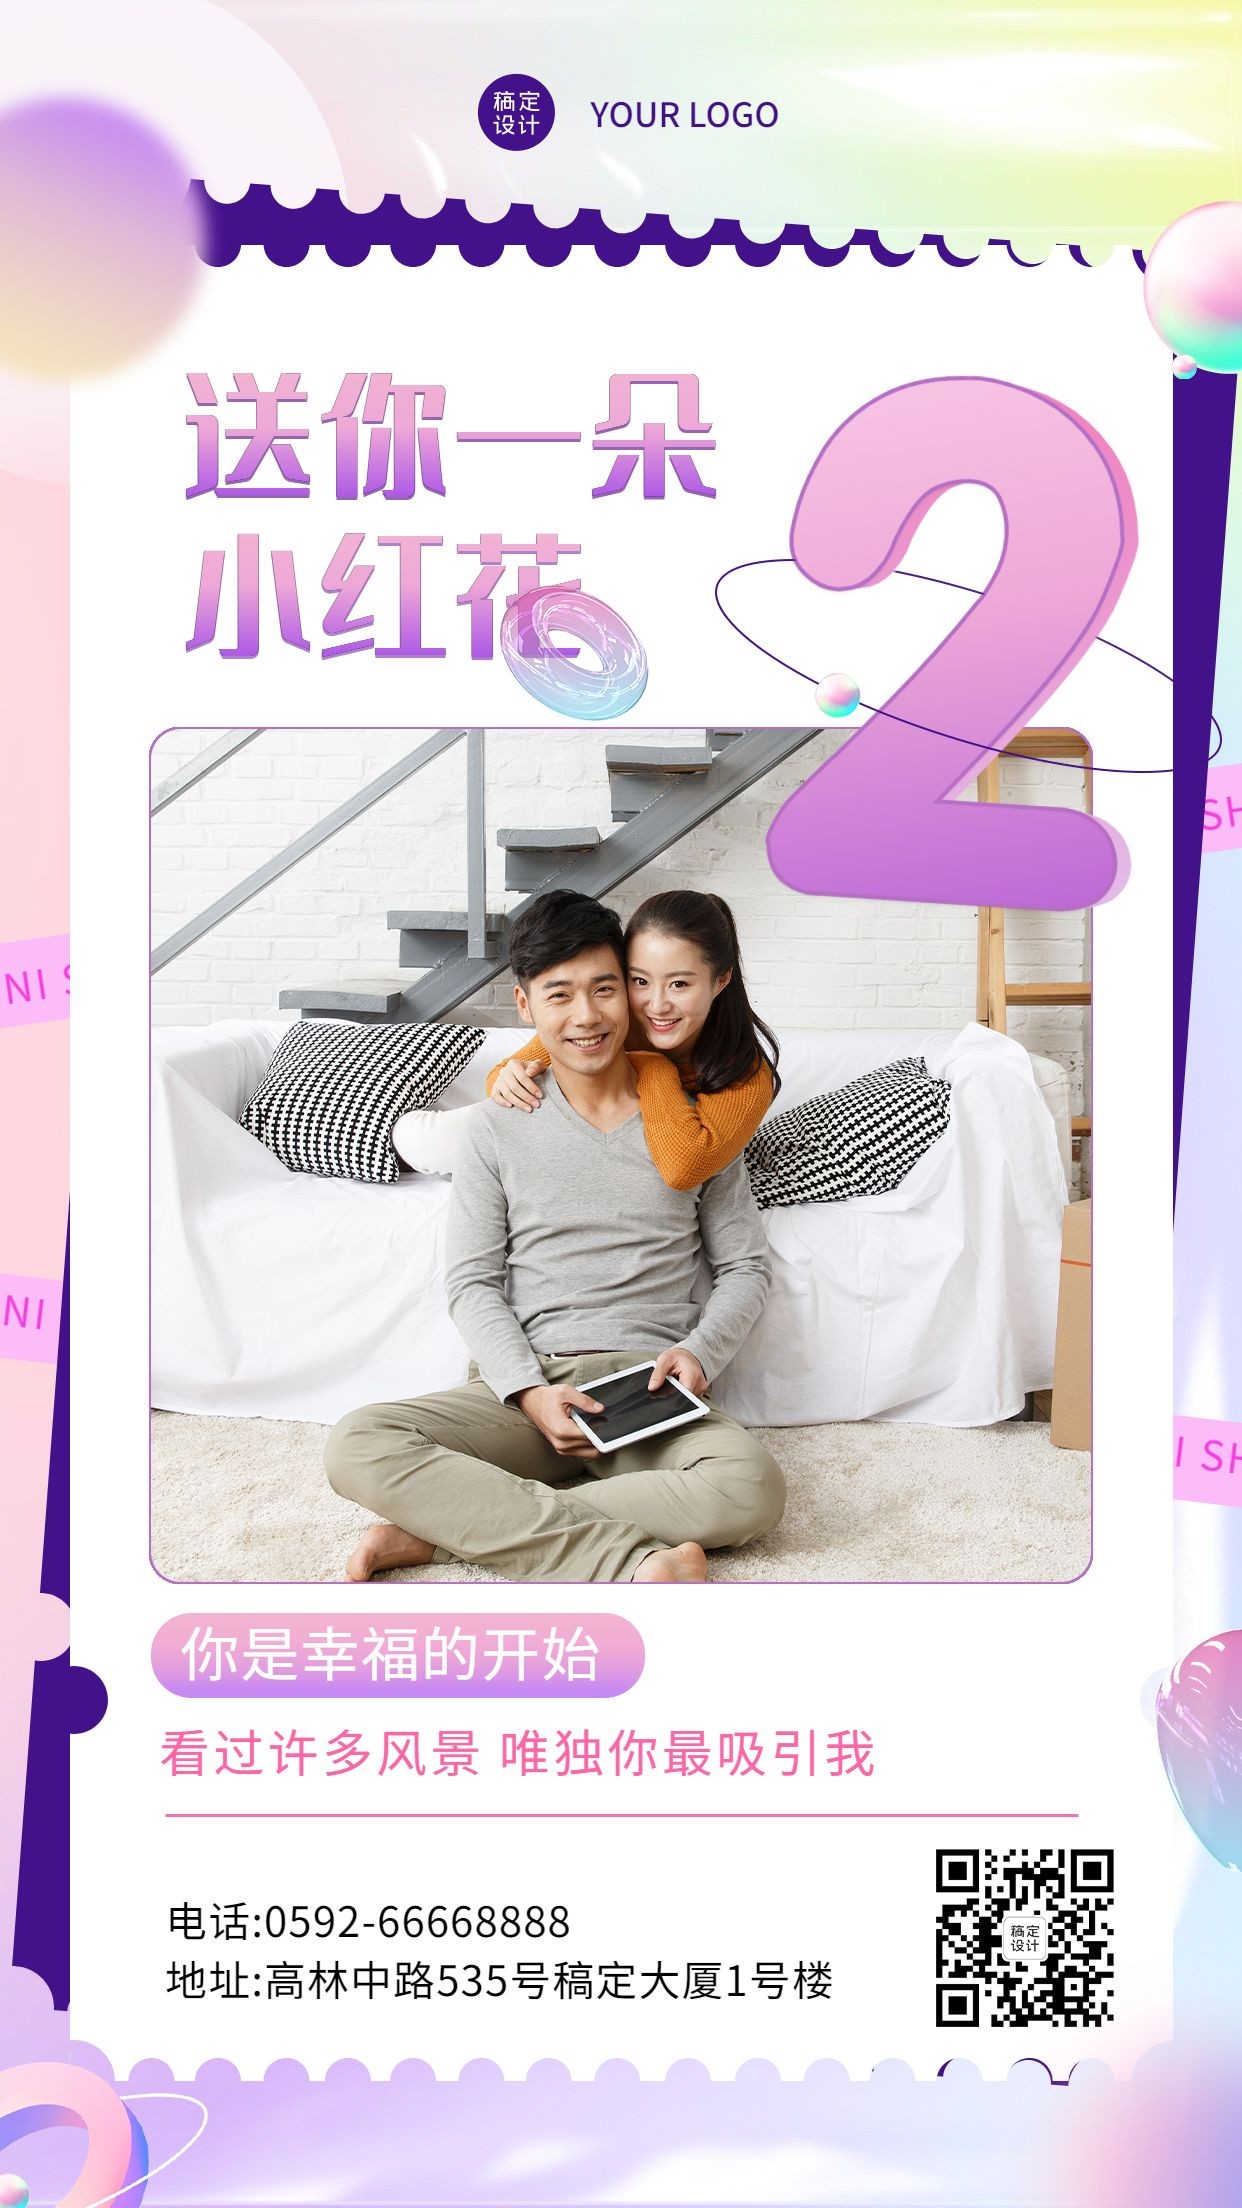 520情人节节日活动情侣晒照排版套系手机海报